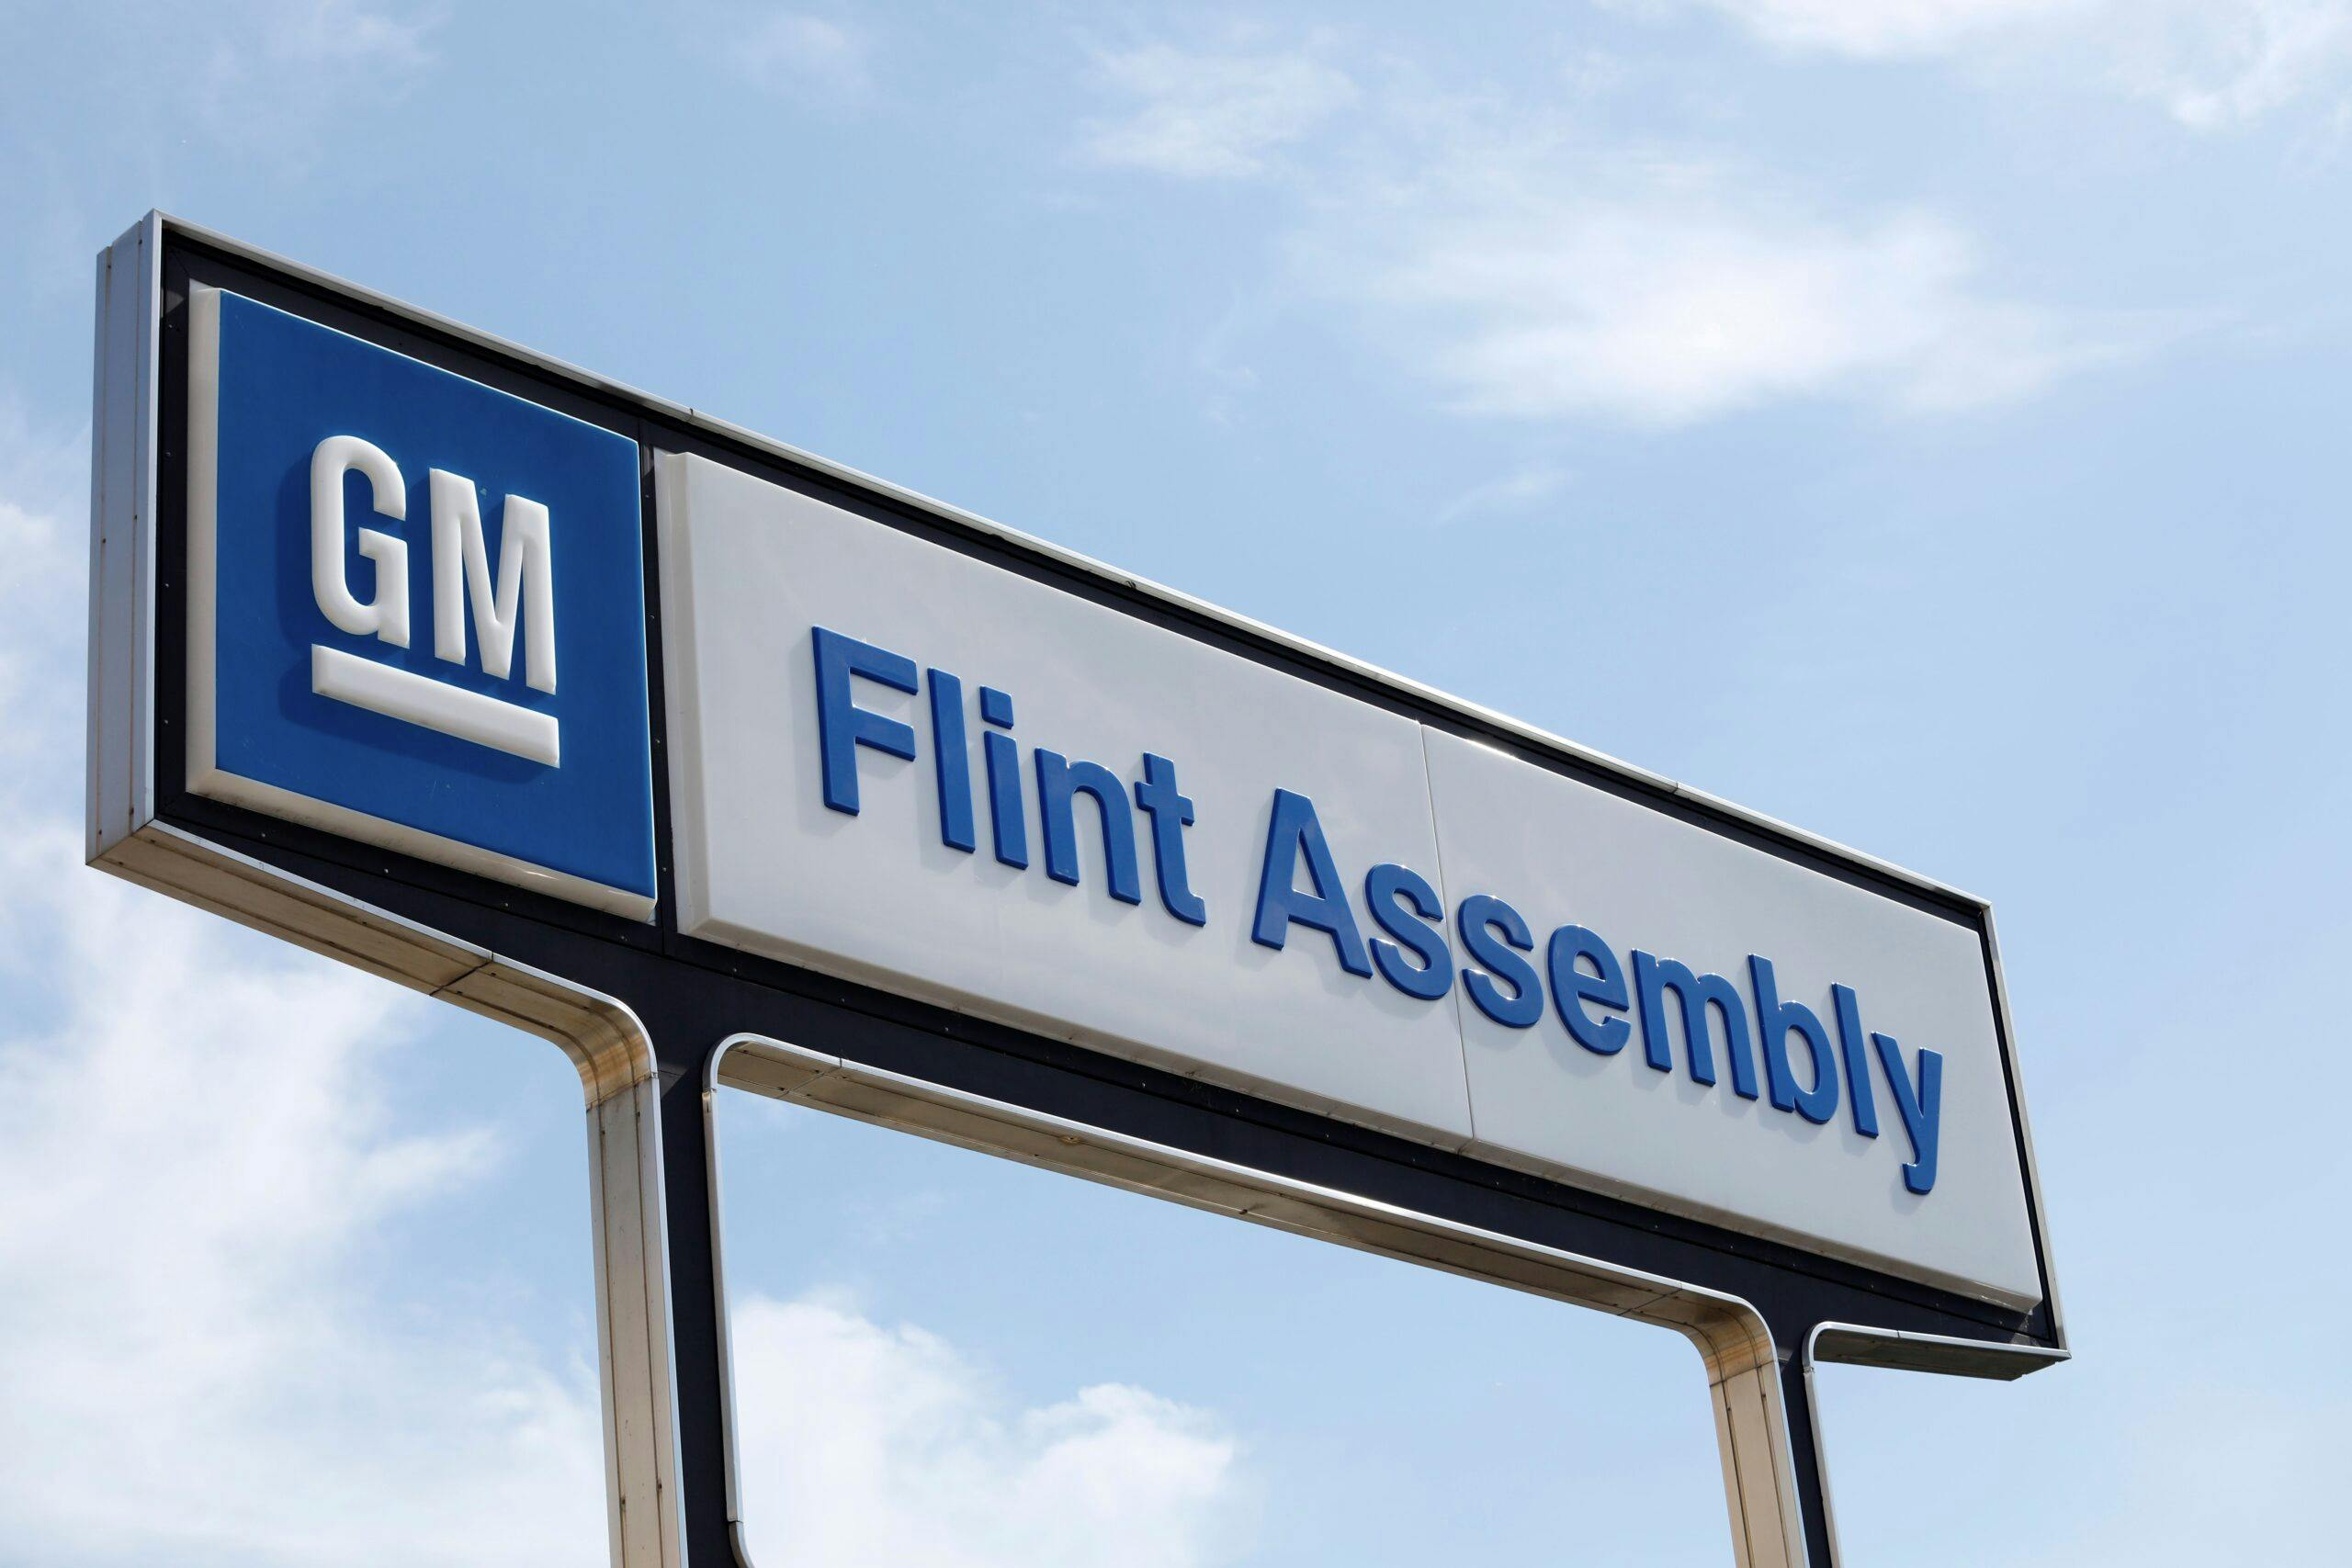 flint assembly gm